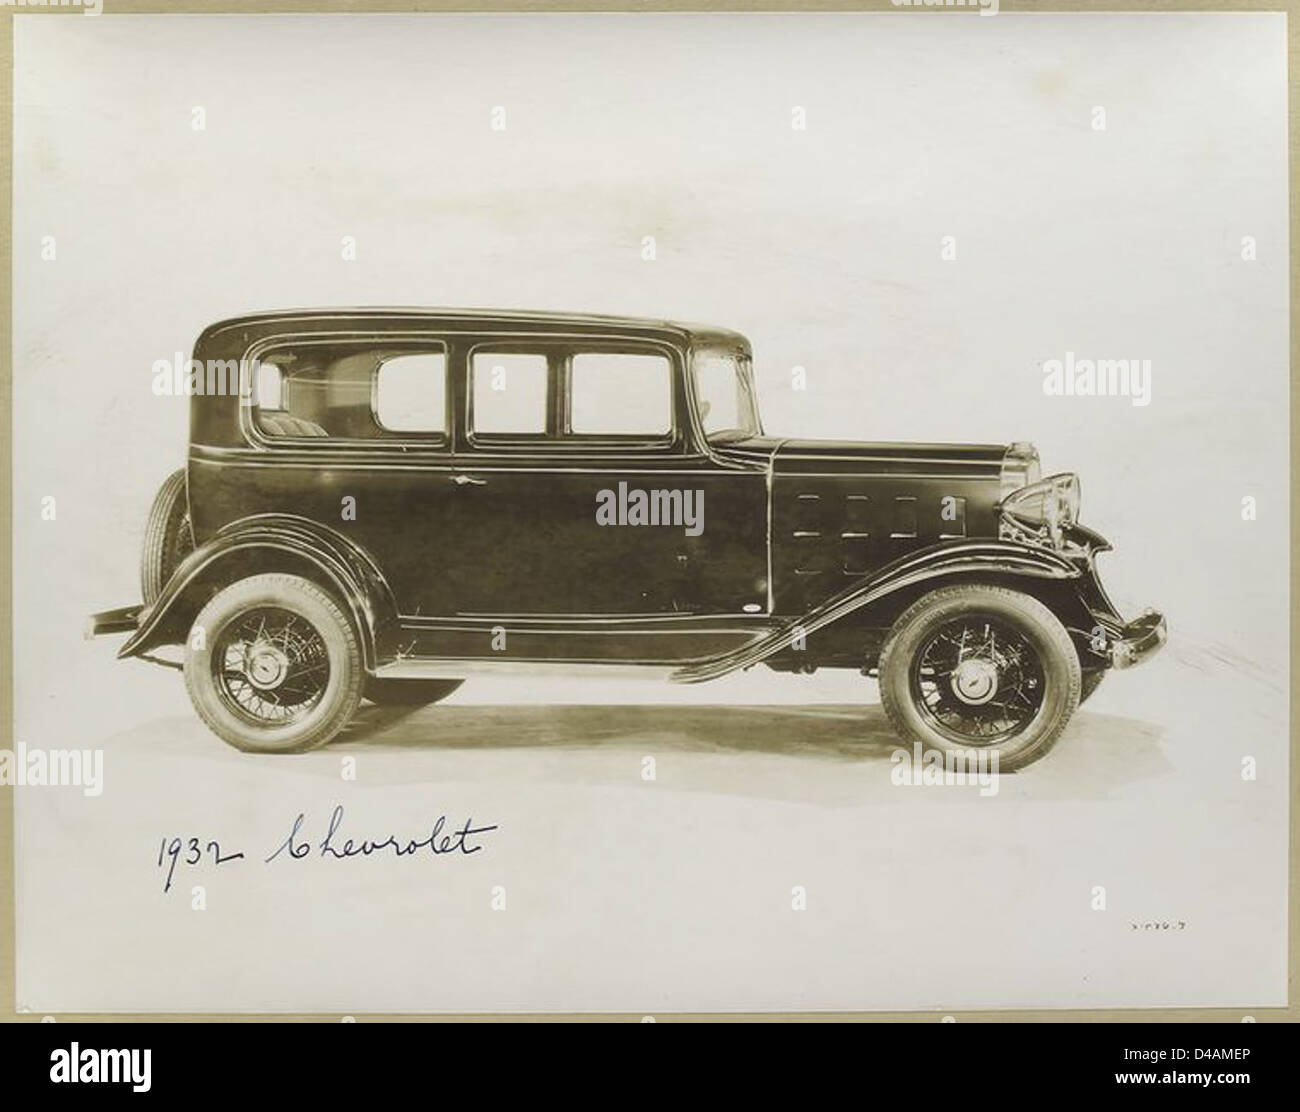 1932 Chevrolet. Stock Photo